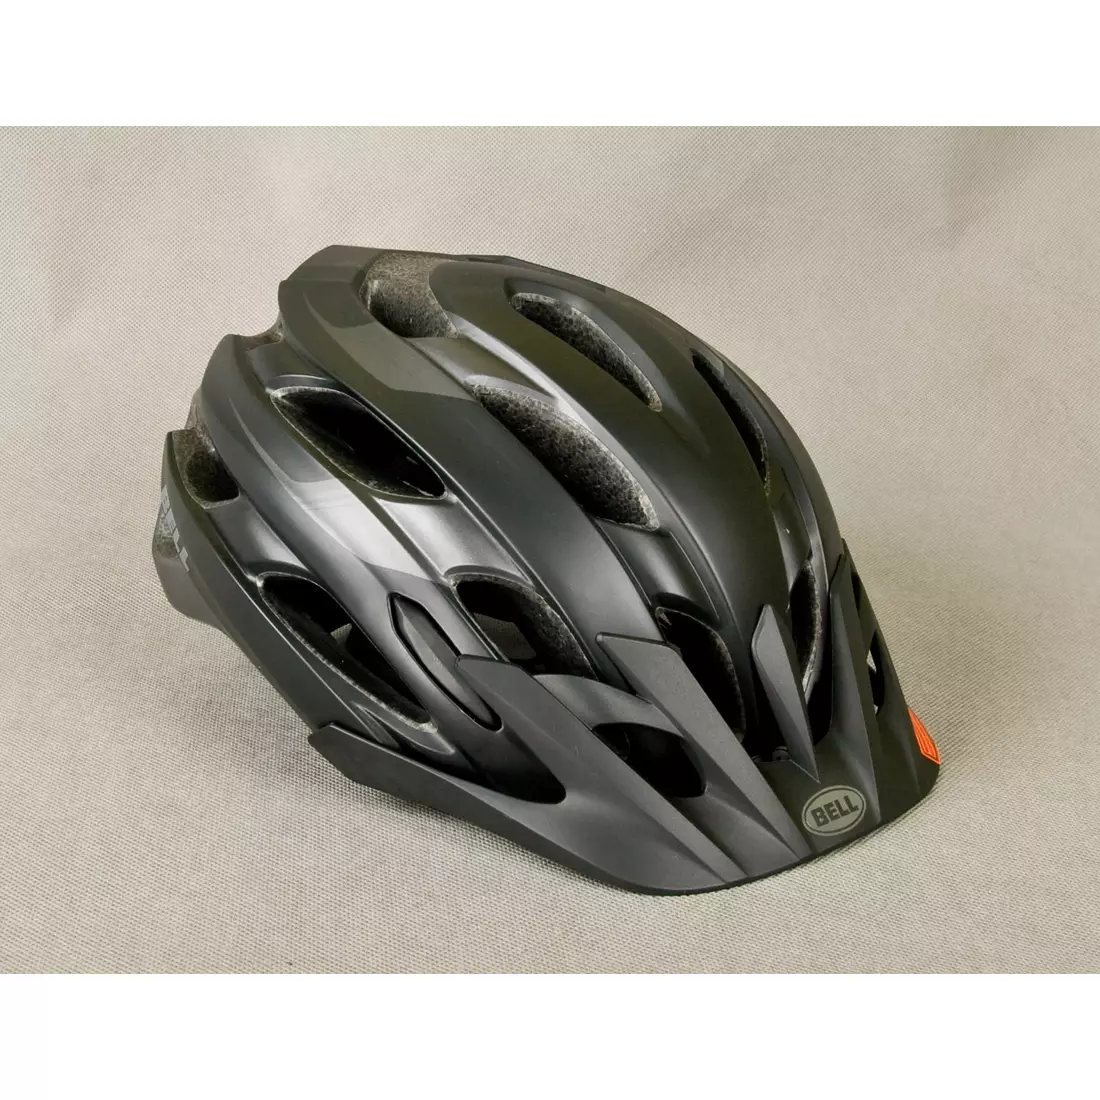 BELL EVENT XC bicycle helmet, matt black